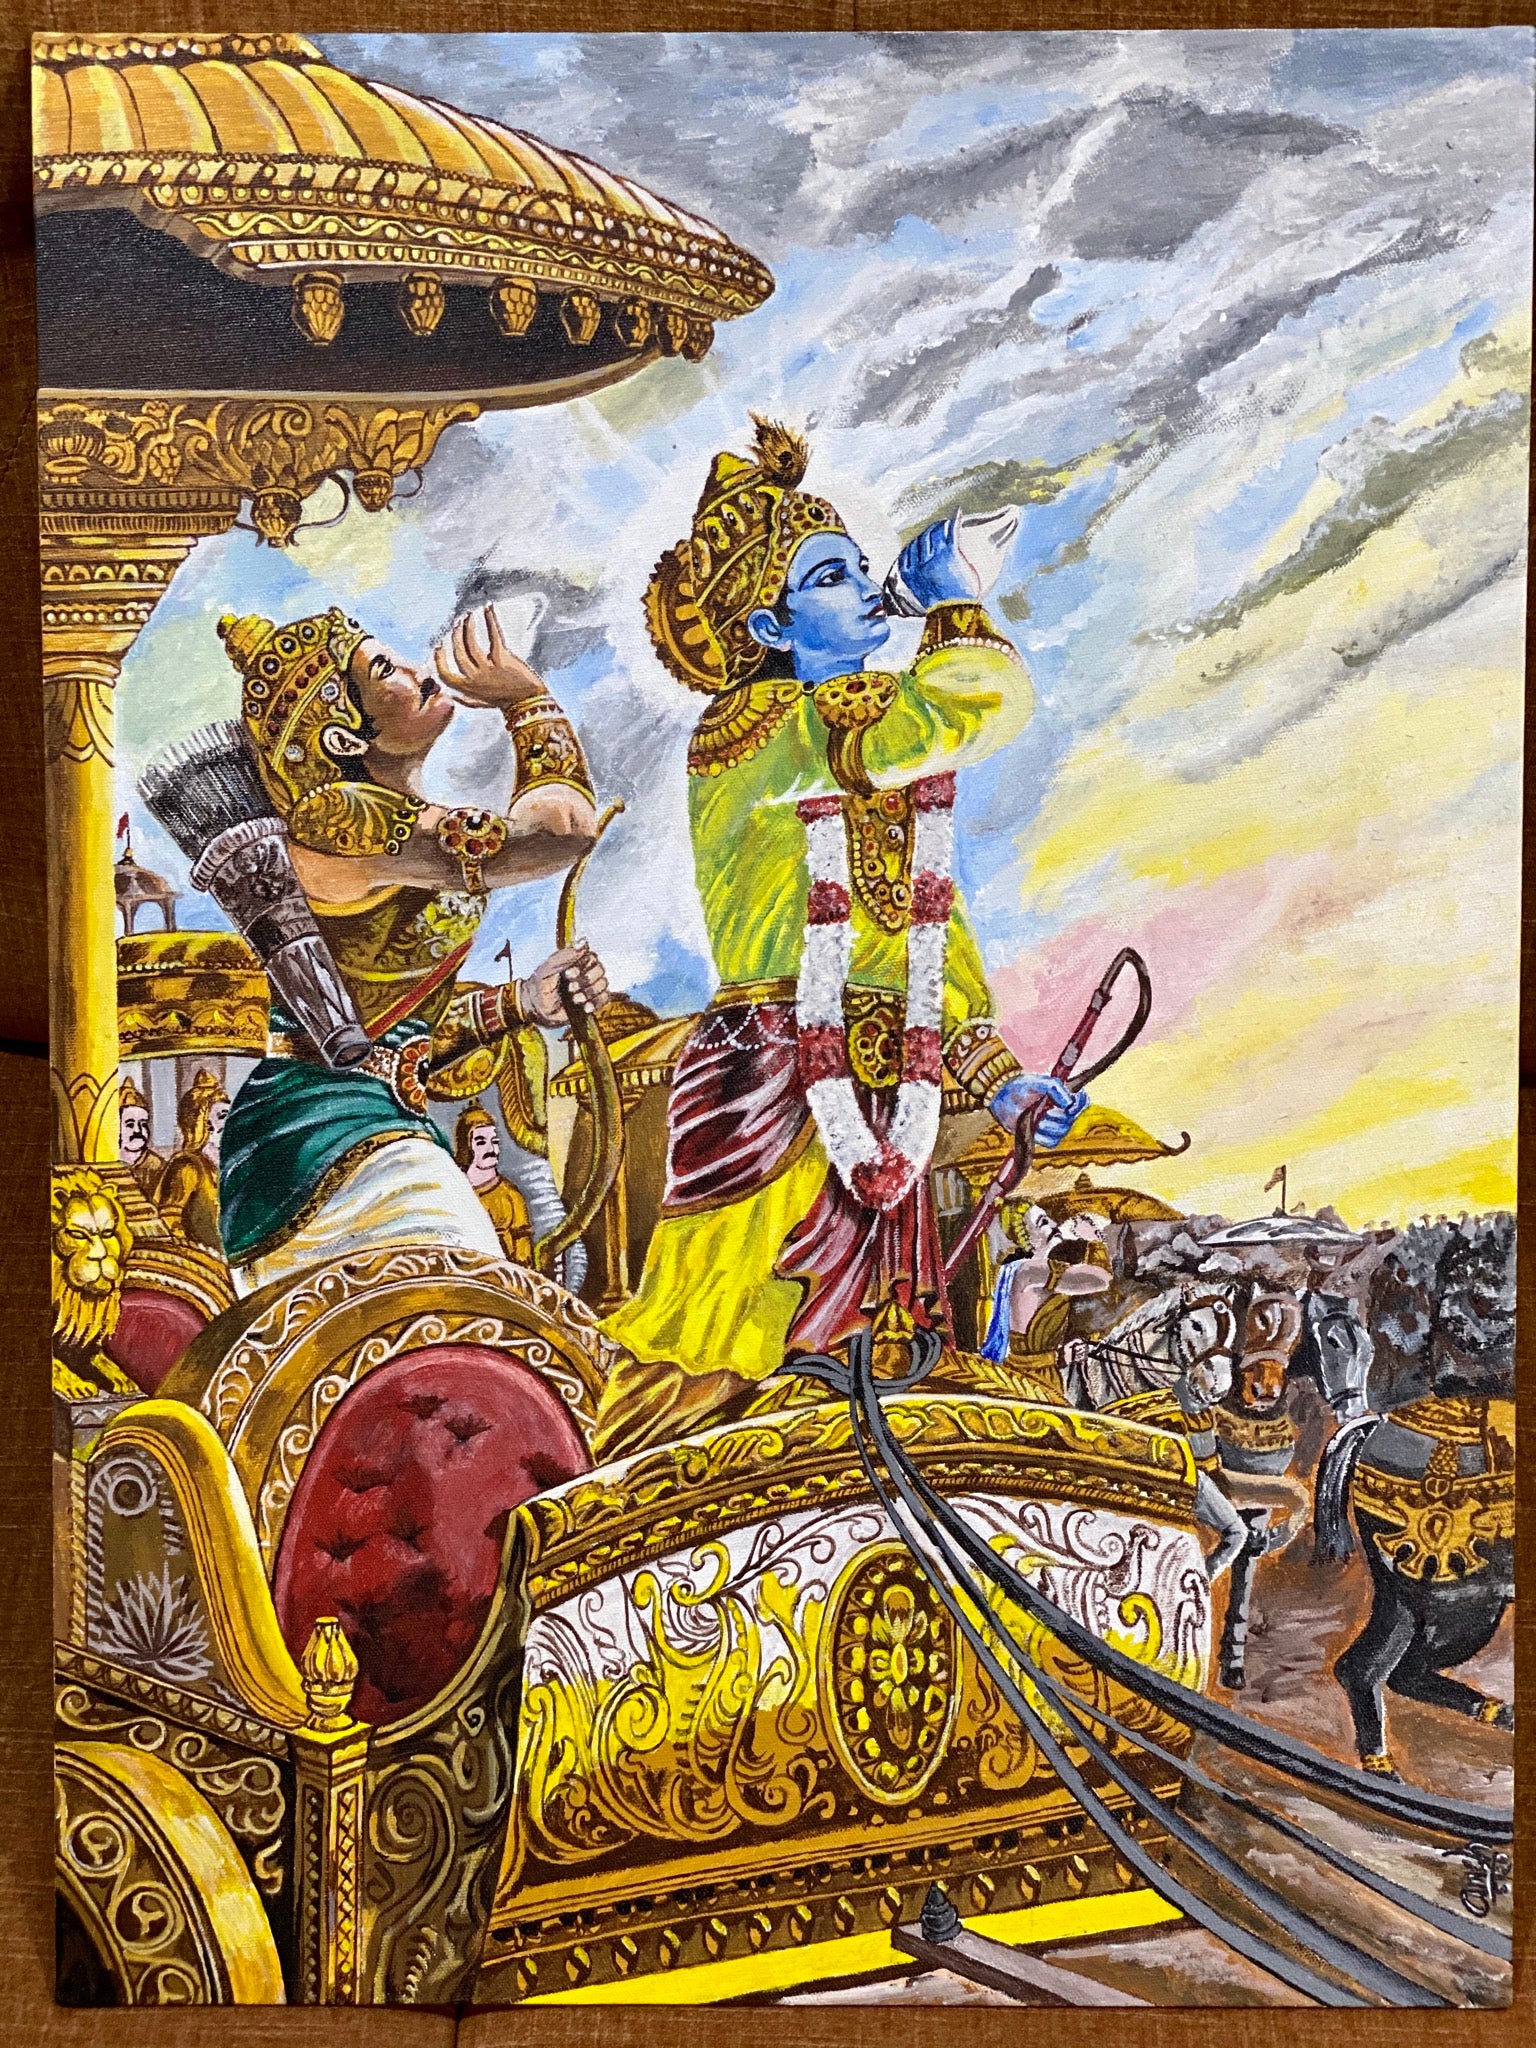 In Mahabharat, was Arjuna ambidextrous? - Quora